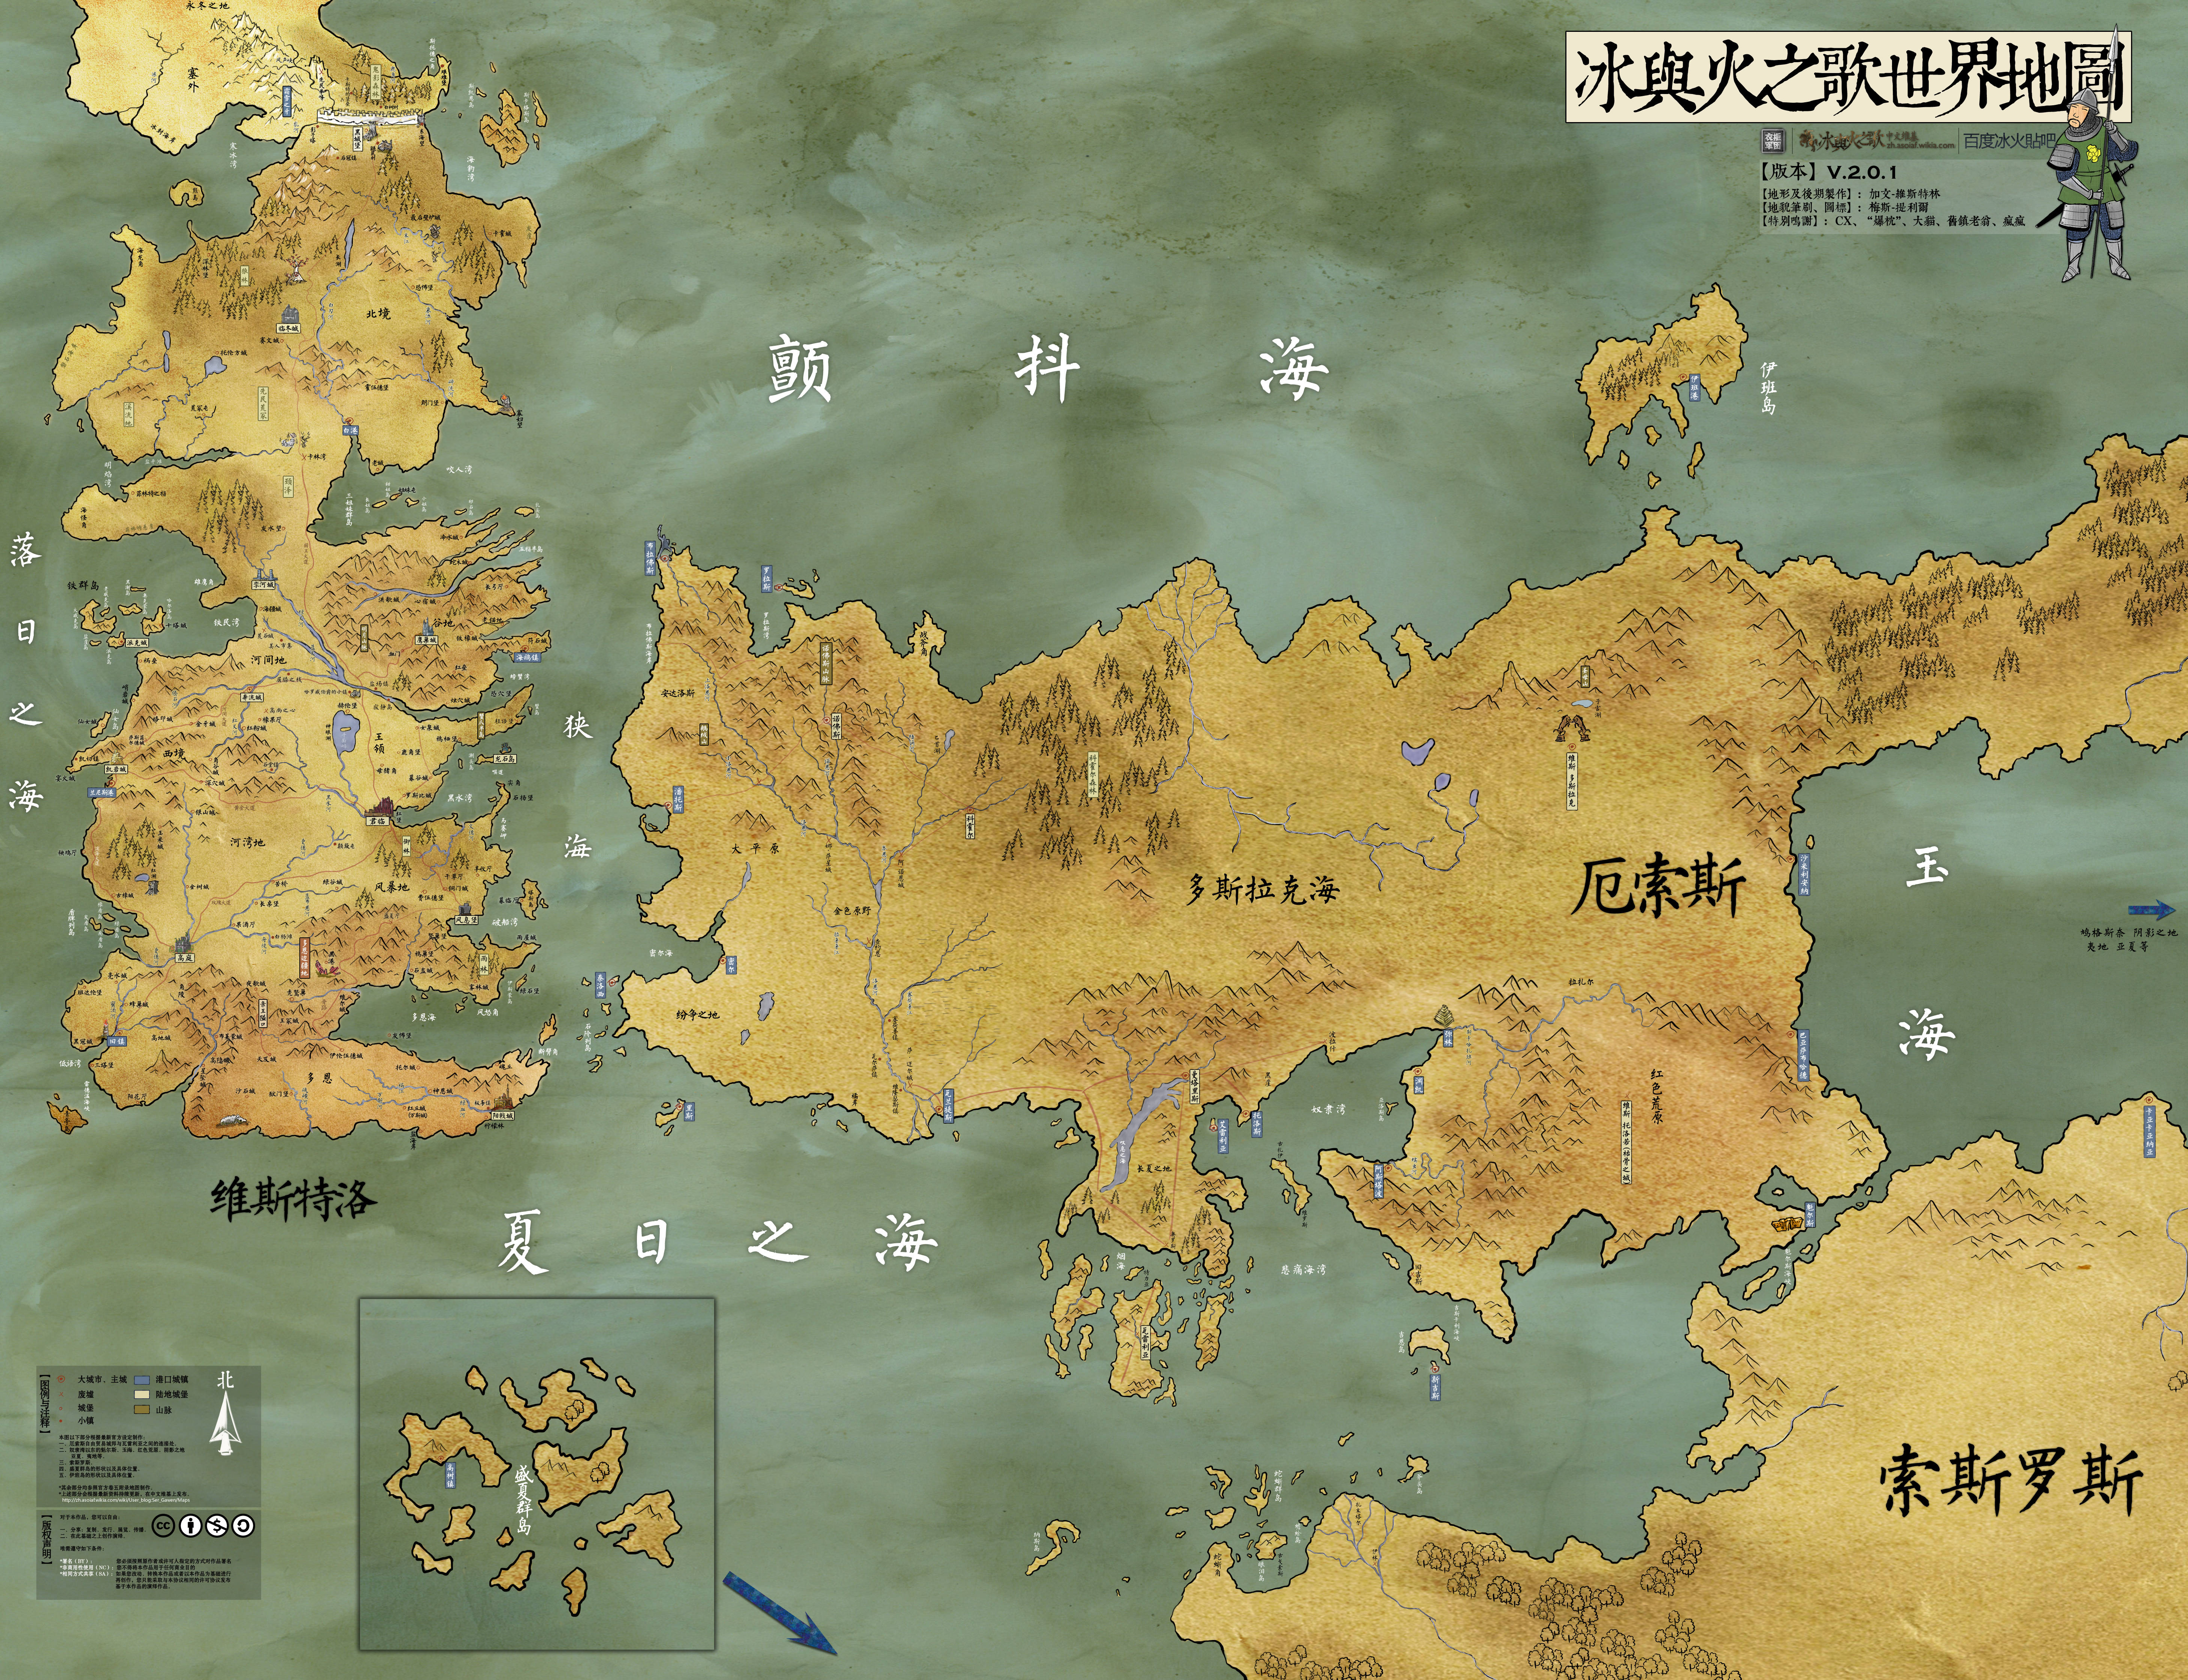 《权力的游戏》持续更新,分享最完整地图